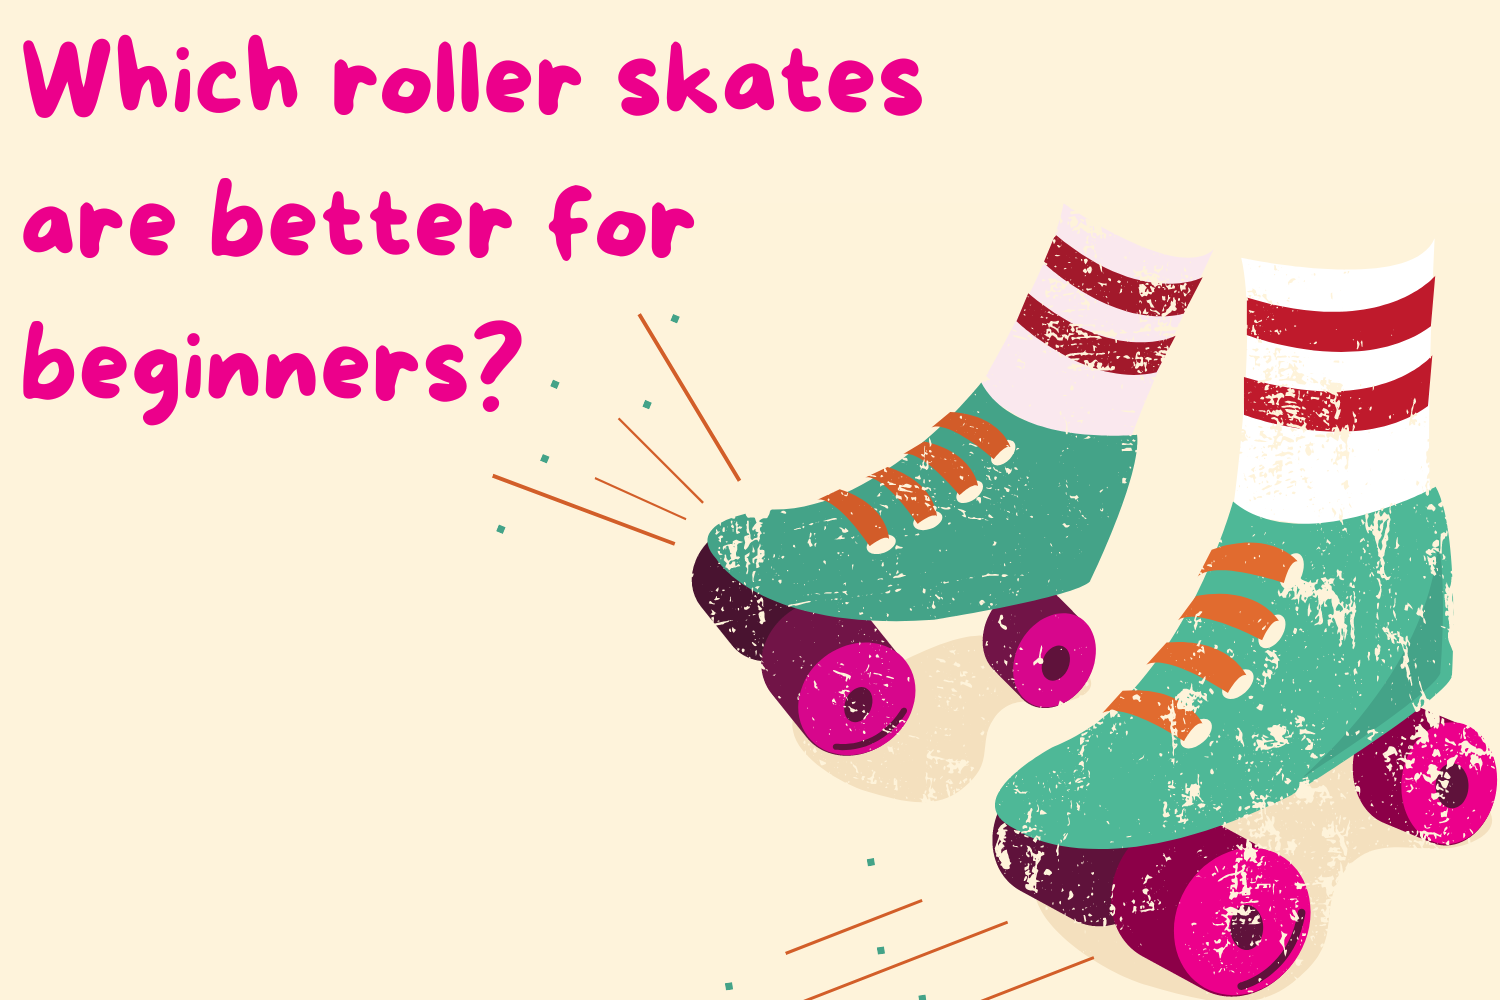 Best Skates for Kids - Kids Skates by Roller Derby